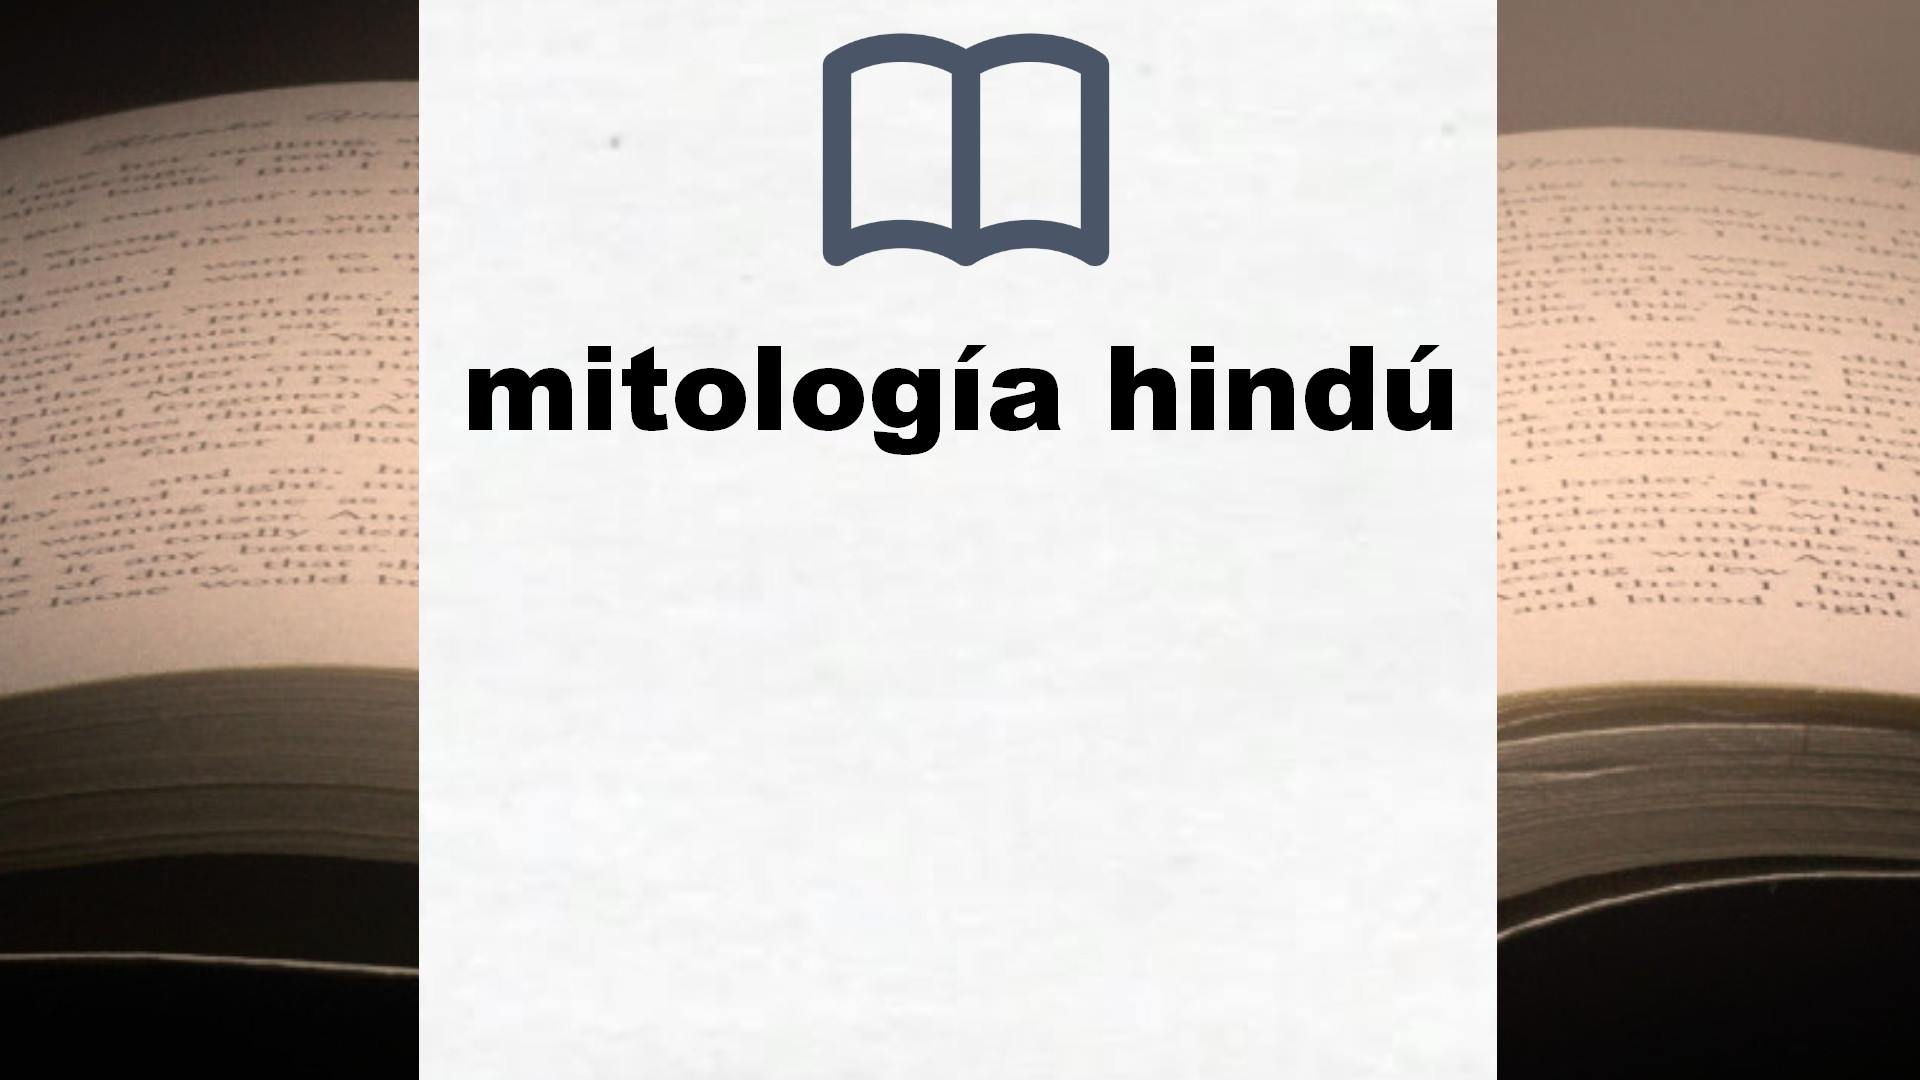 Libros sobre mitología hindú